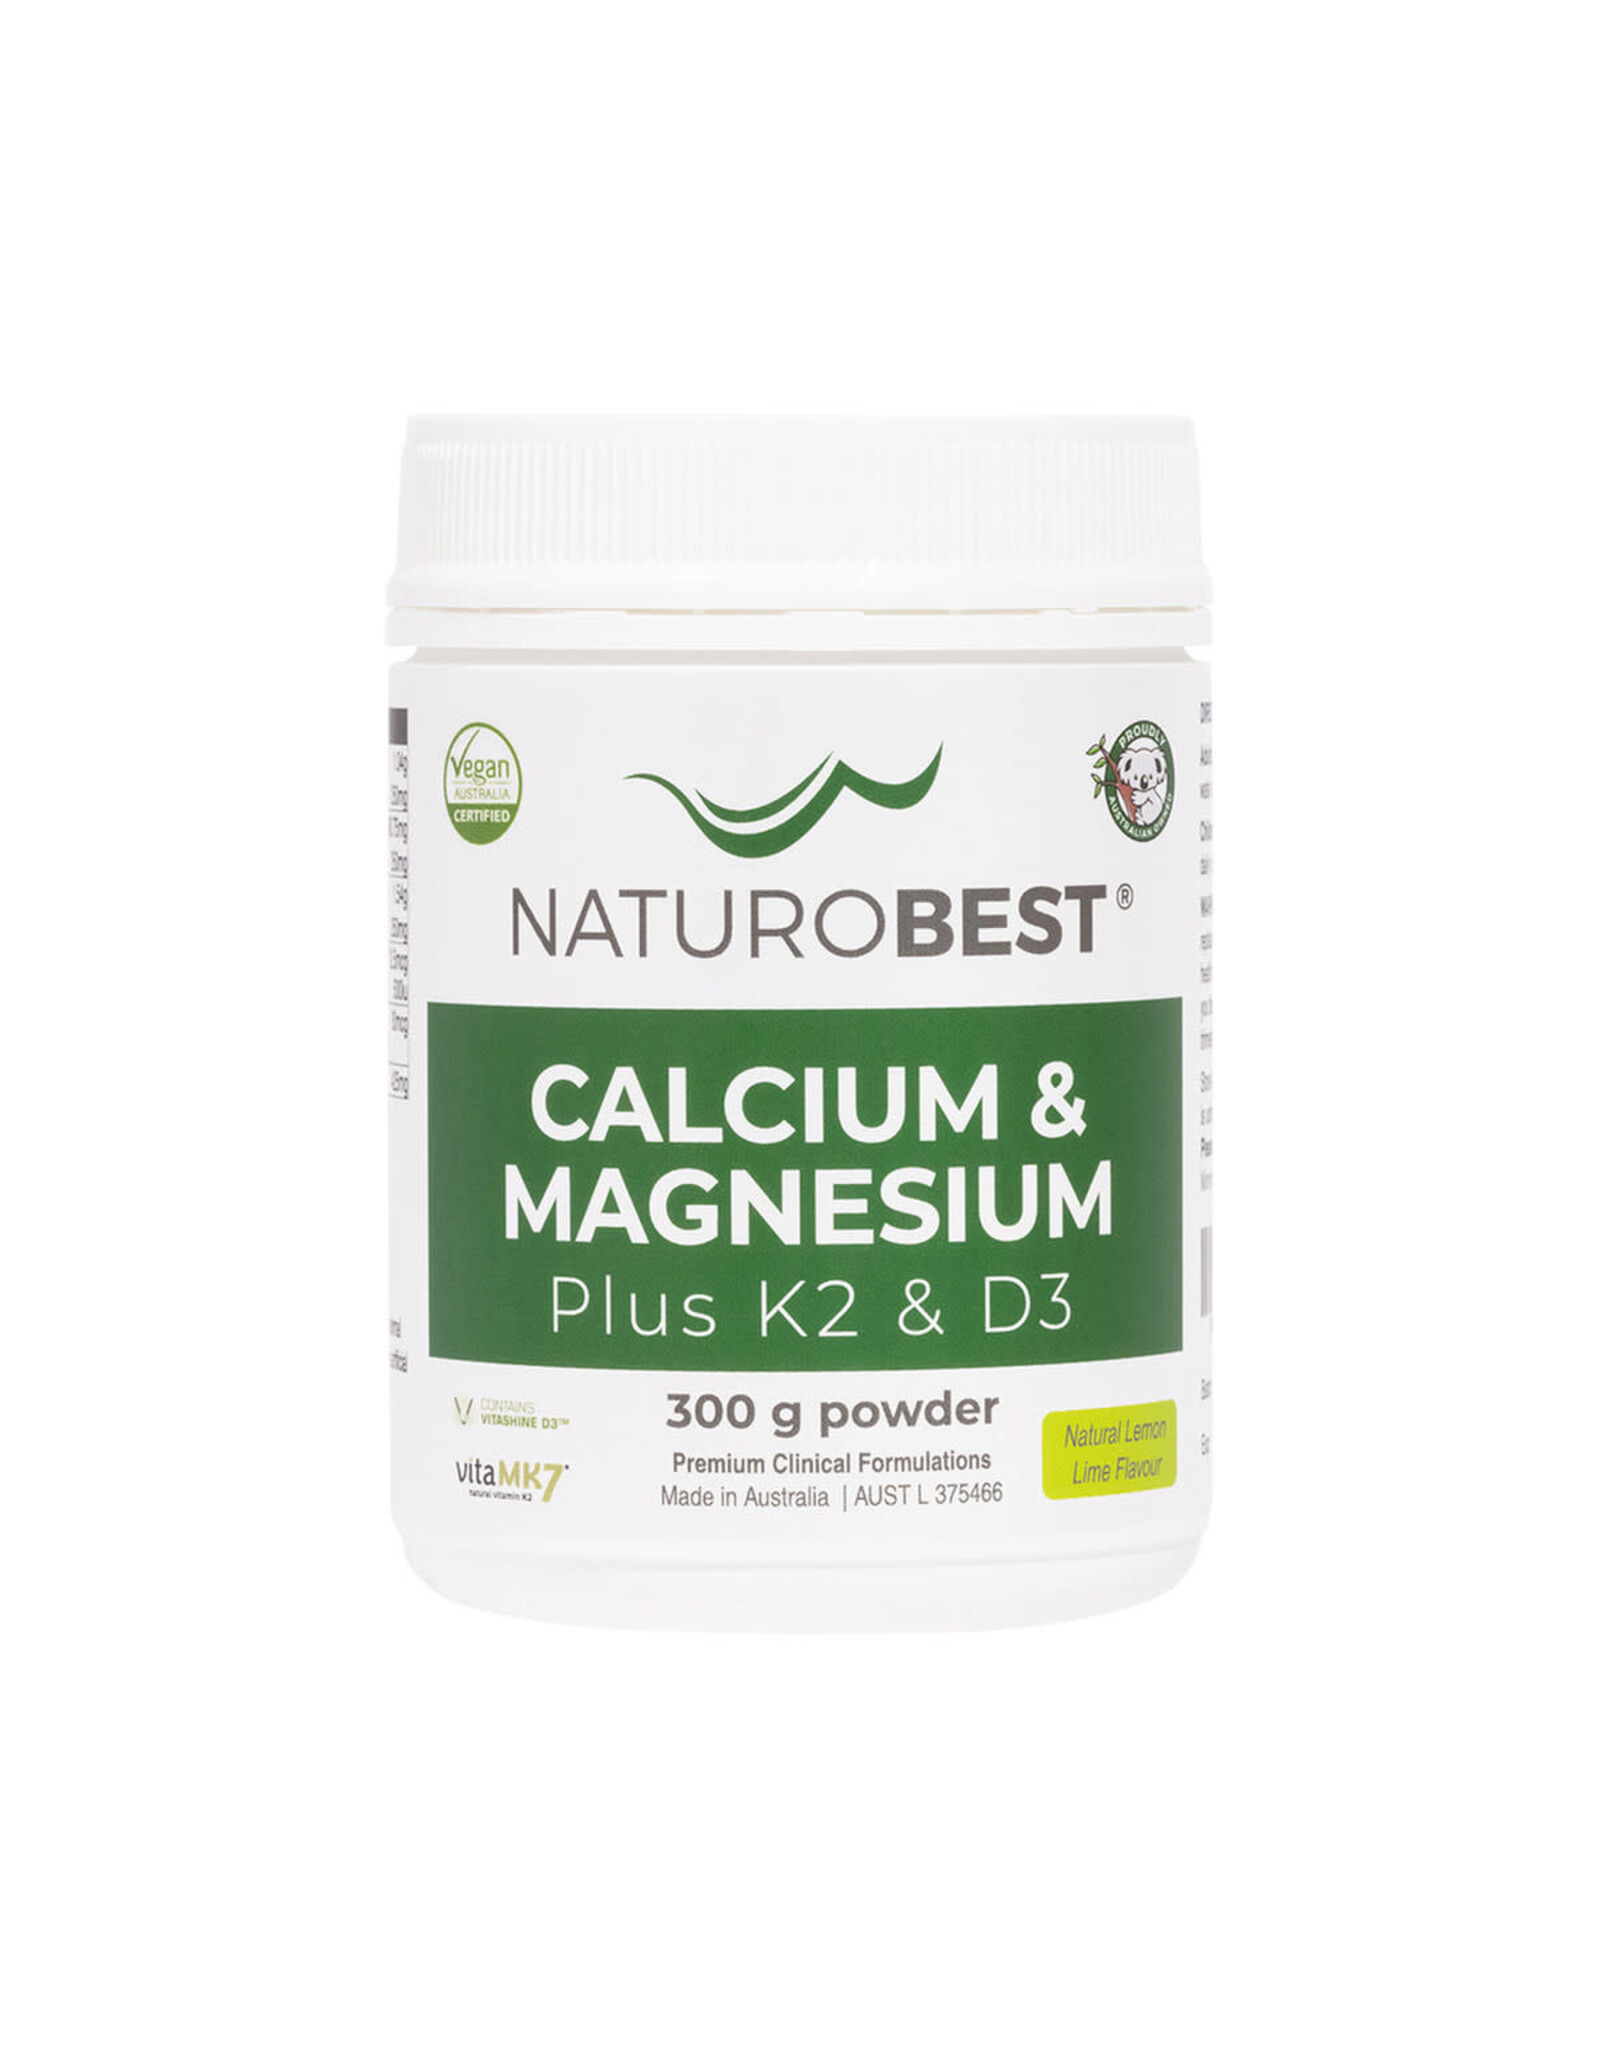 Naturobest Calcium & Magnesium Plus K2 & D3 300g